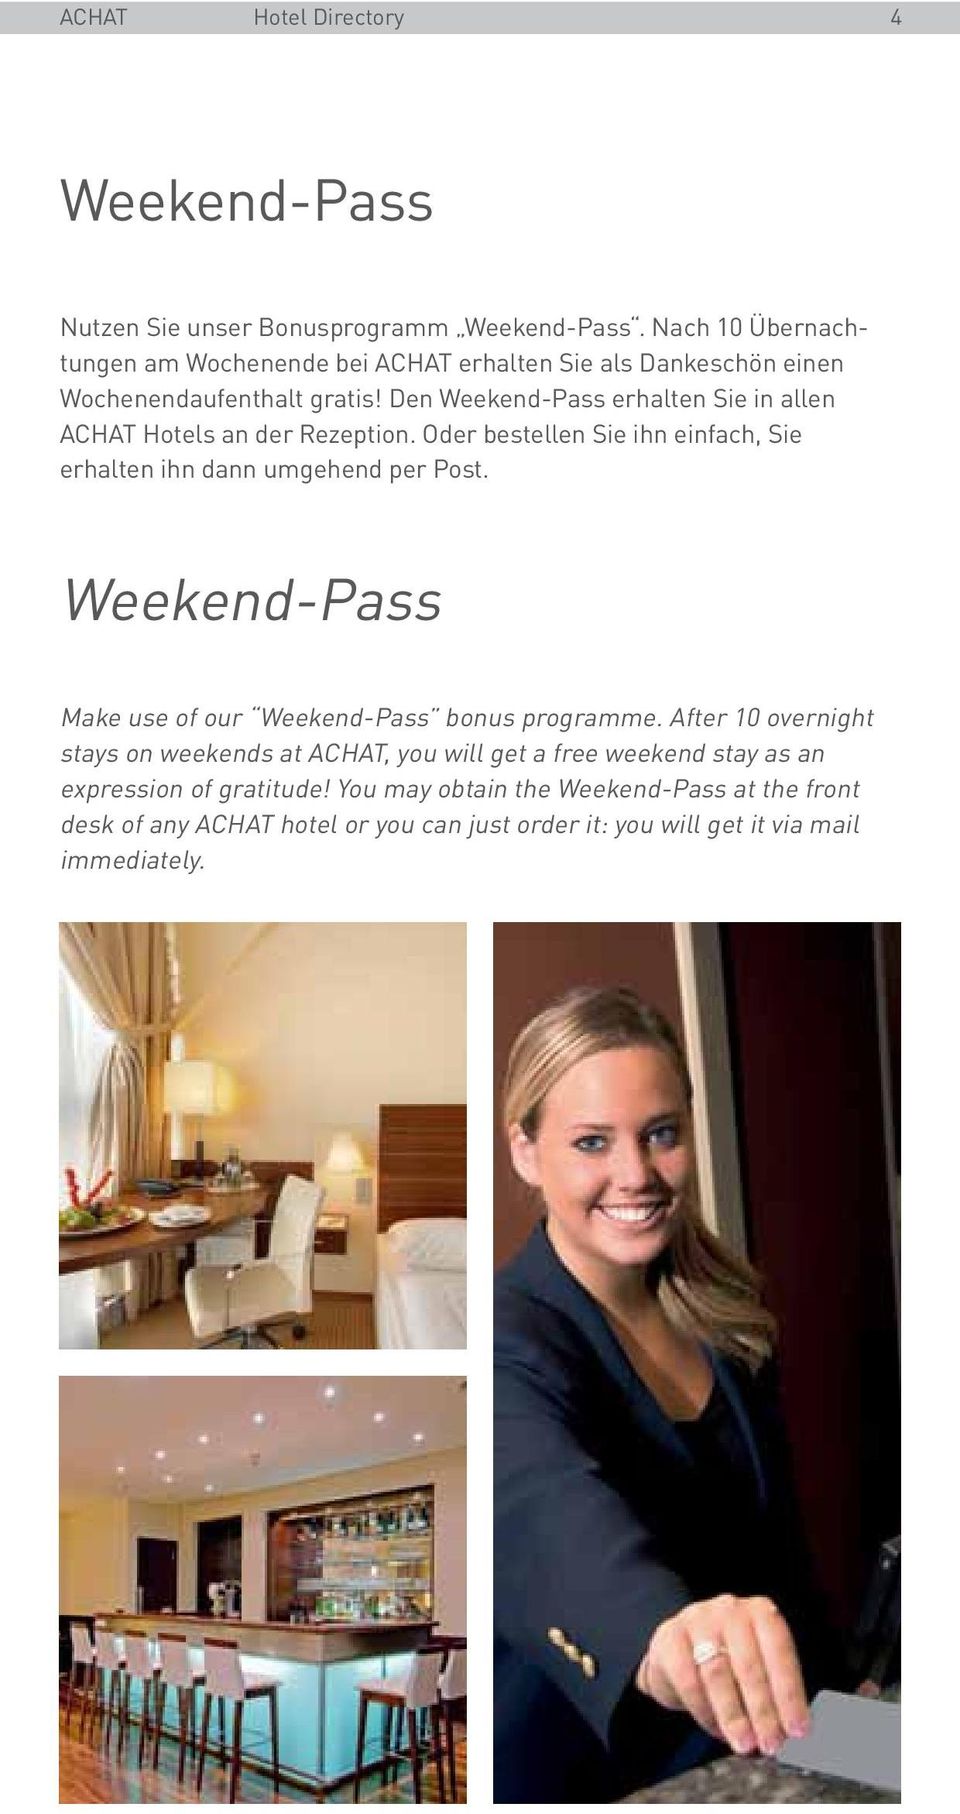 Den Weekend-Pass erhalten Sie in allen ACHAT Hotels an der Rezeption. Oder bestellen Sie ihn einfach, Sie erhalten ihn dann umgehend per Post.